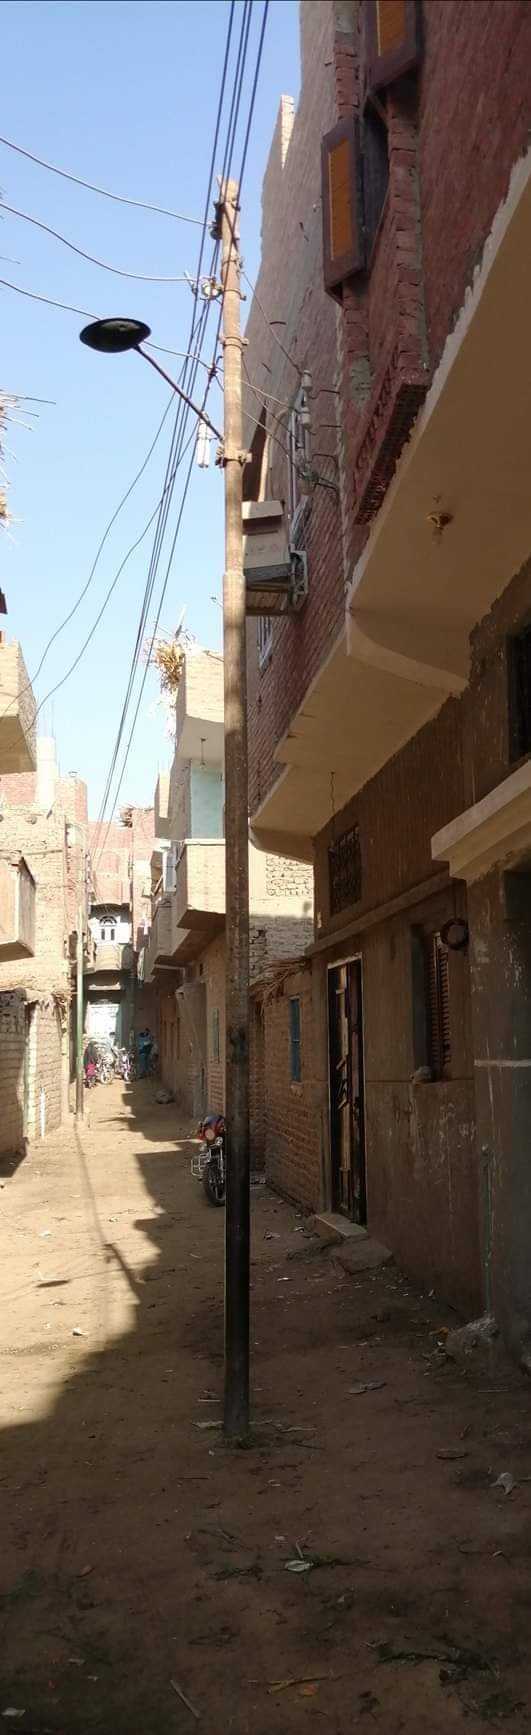 شوارع قرية الهماص بسوهاج